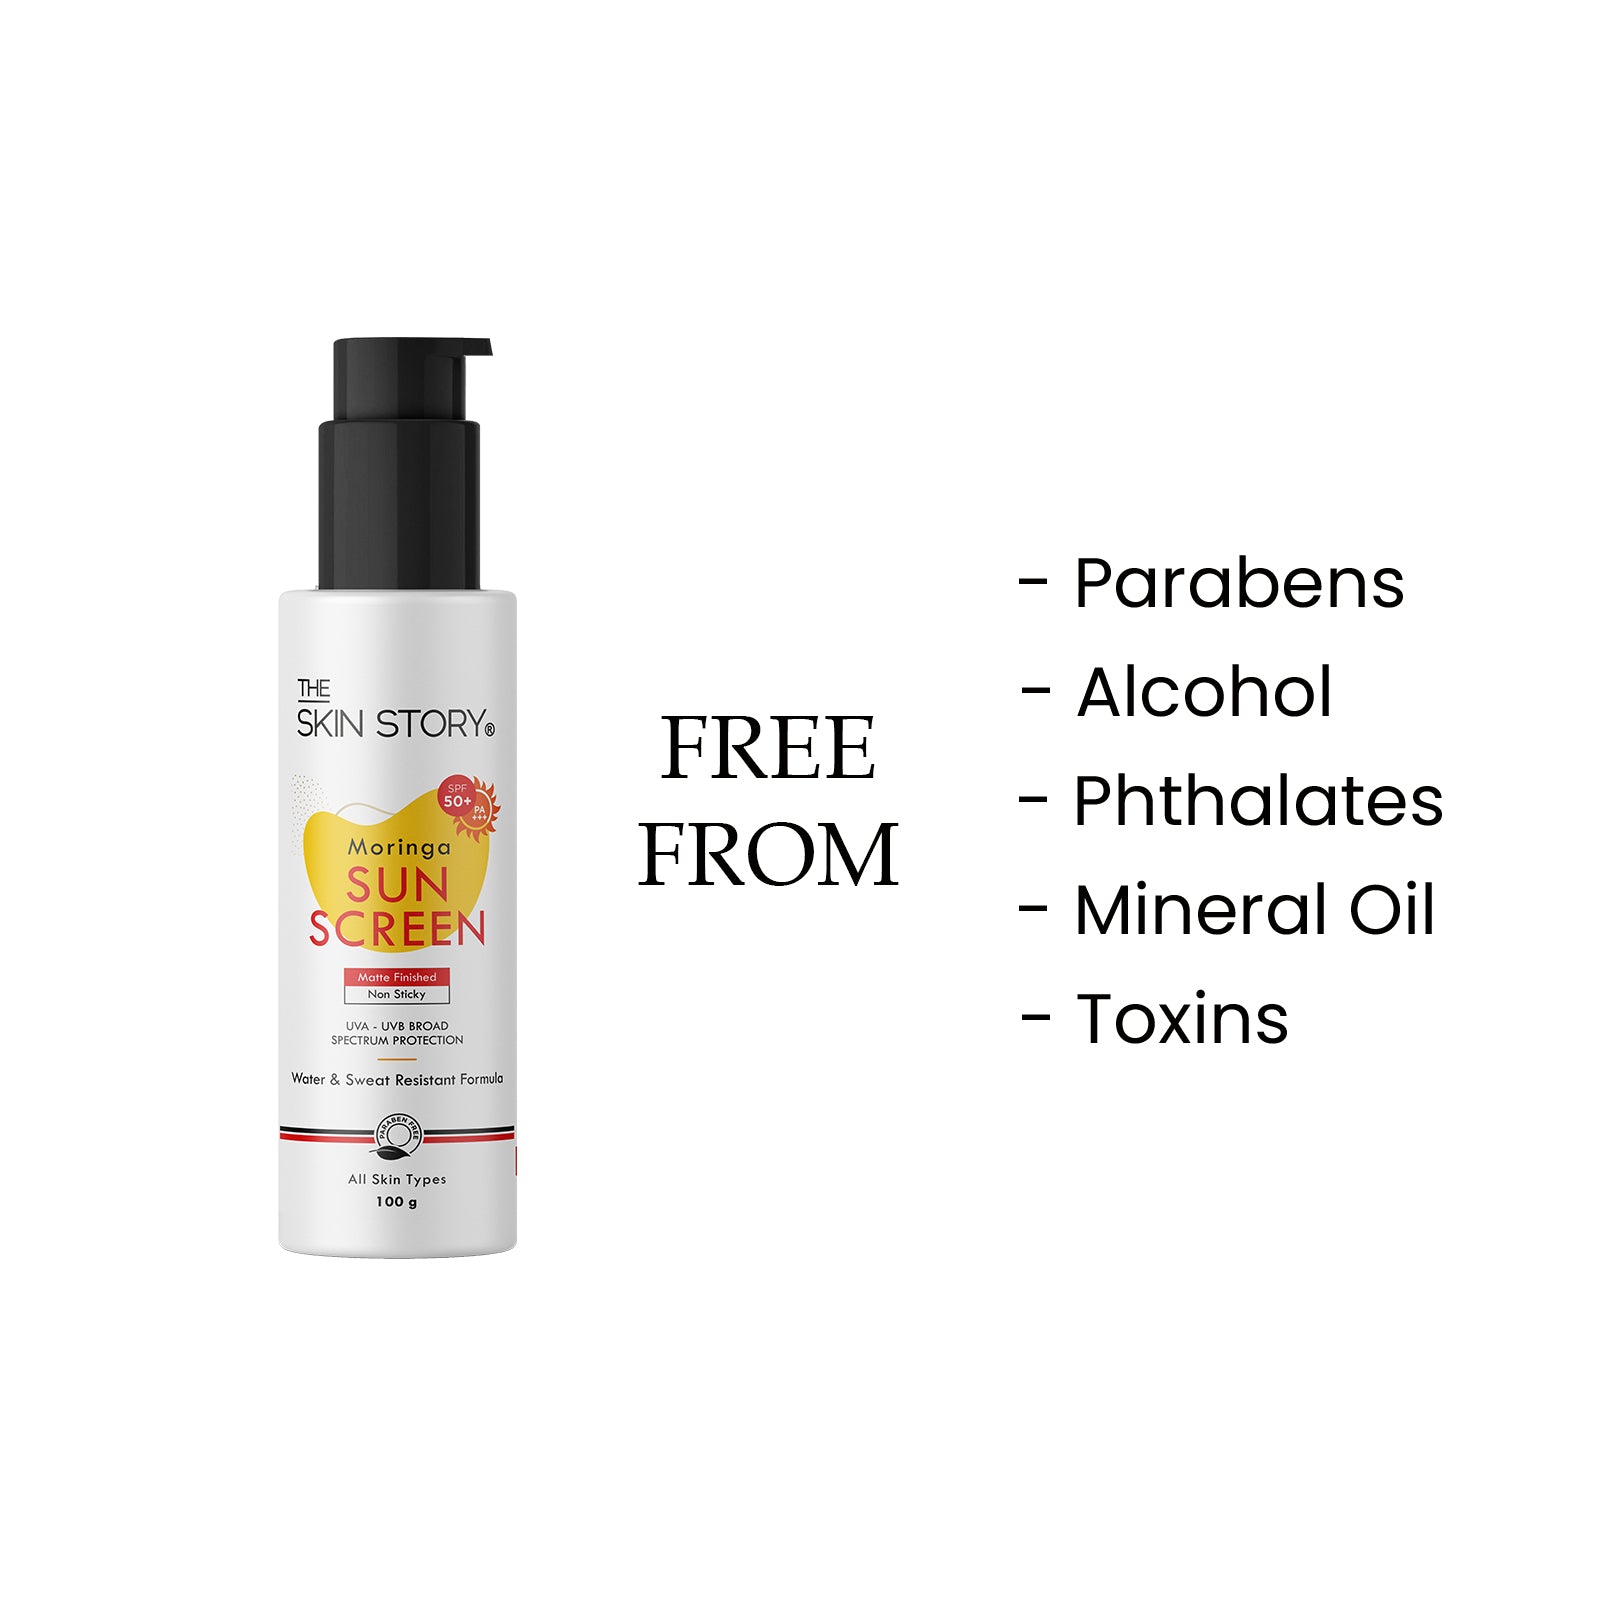 The Skin Story Moringa Broad Spectrum Sunscreen SPF 50 | UVA & UVB Protection | Light Weight Cream |All Skin Types |SPF50 | Moringa Oil | 100g